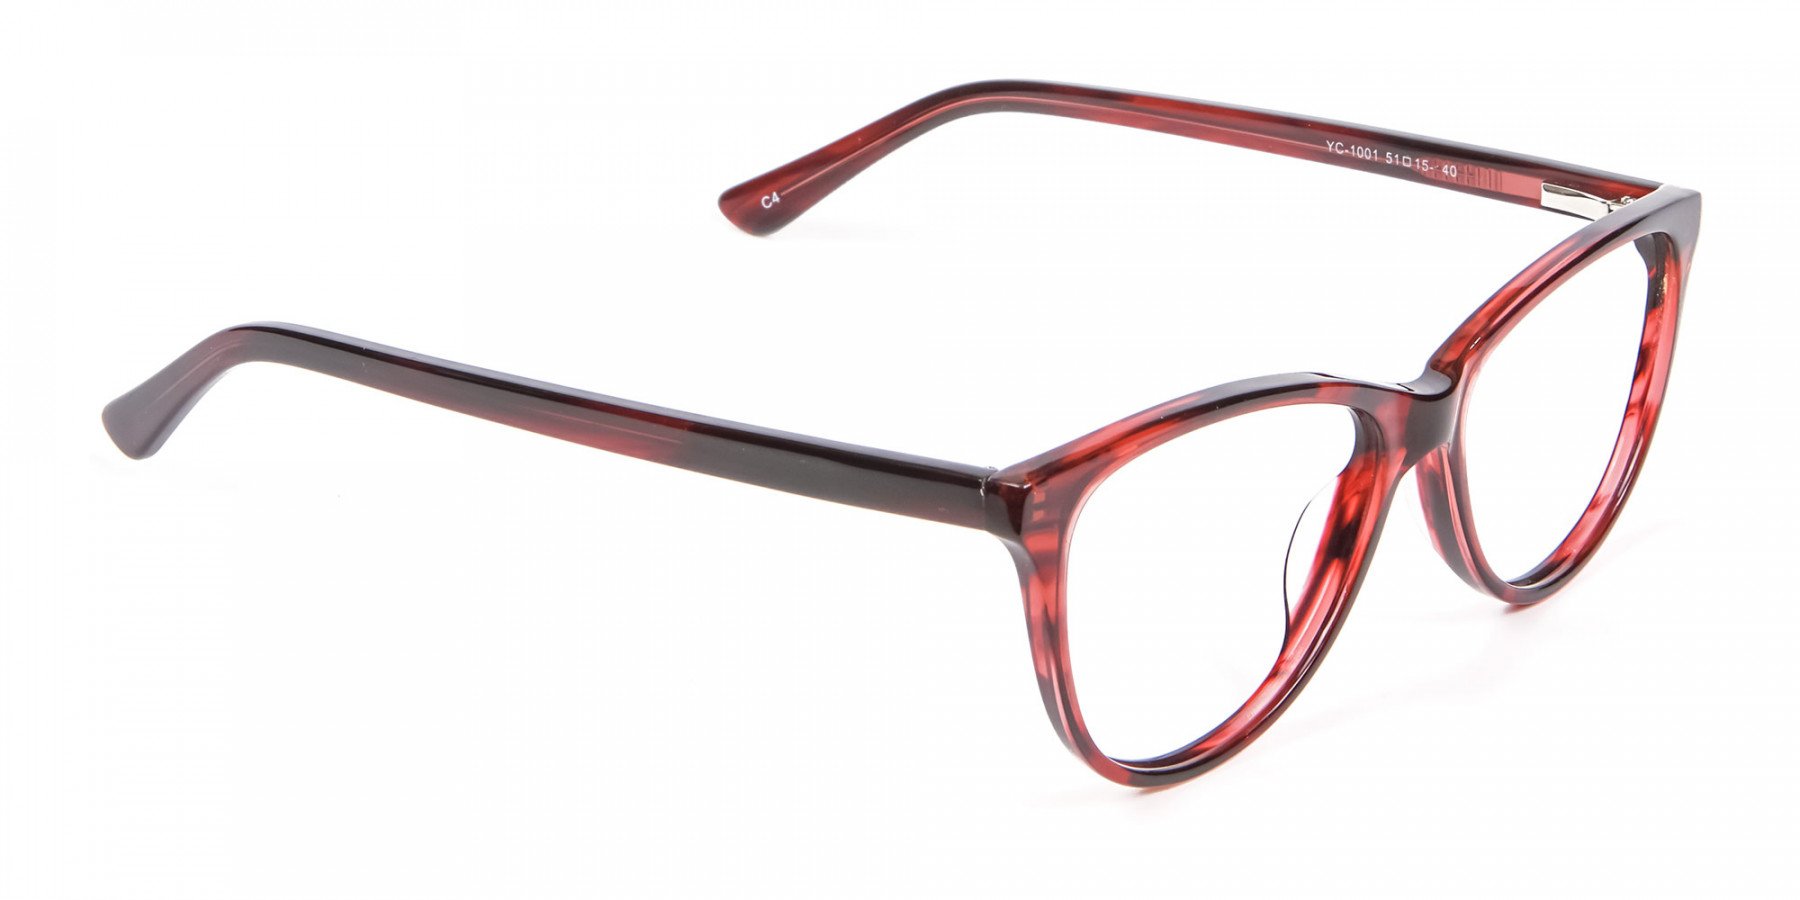 Designer Red Cat Eye Glasses for Women